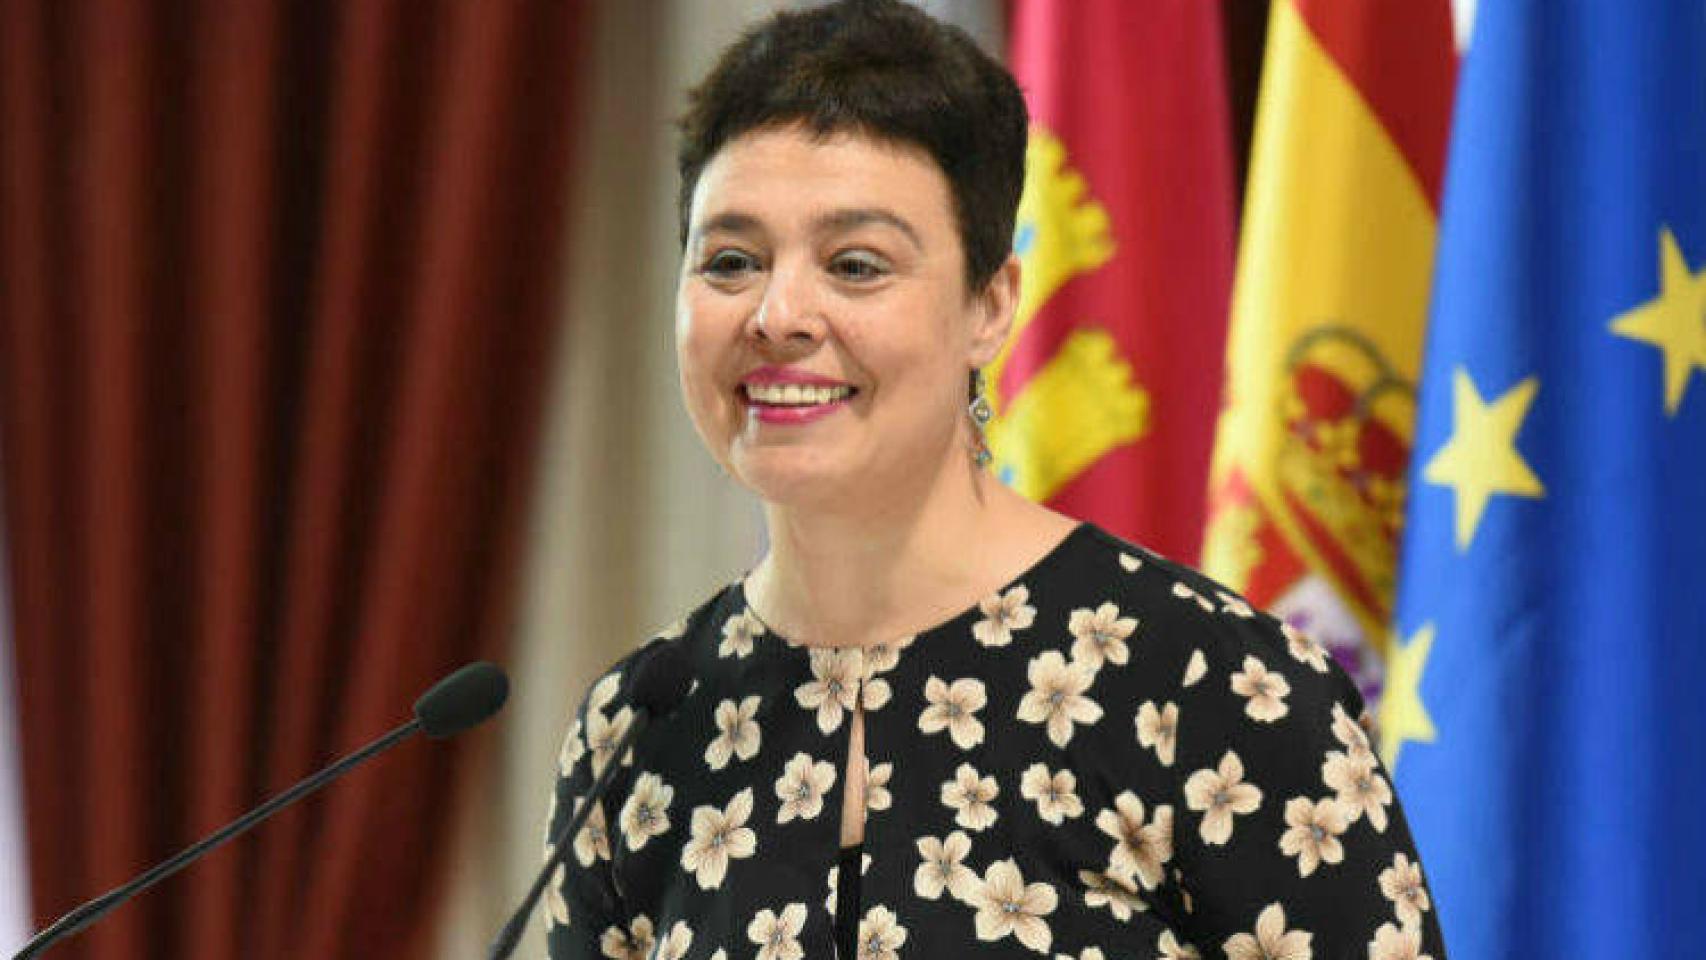 Pilar Zamora, alcaldesa de Ciudad Real, en una imagen de archivo